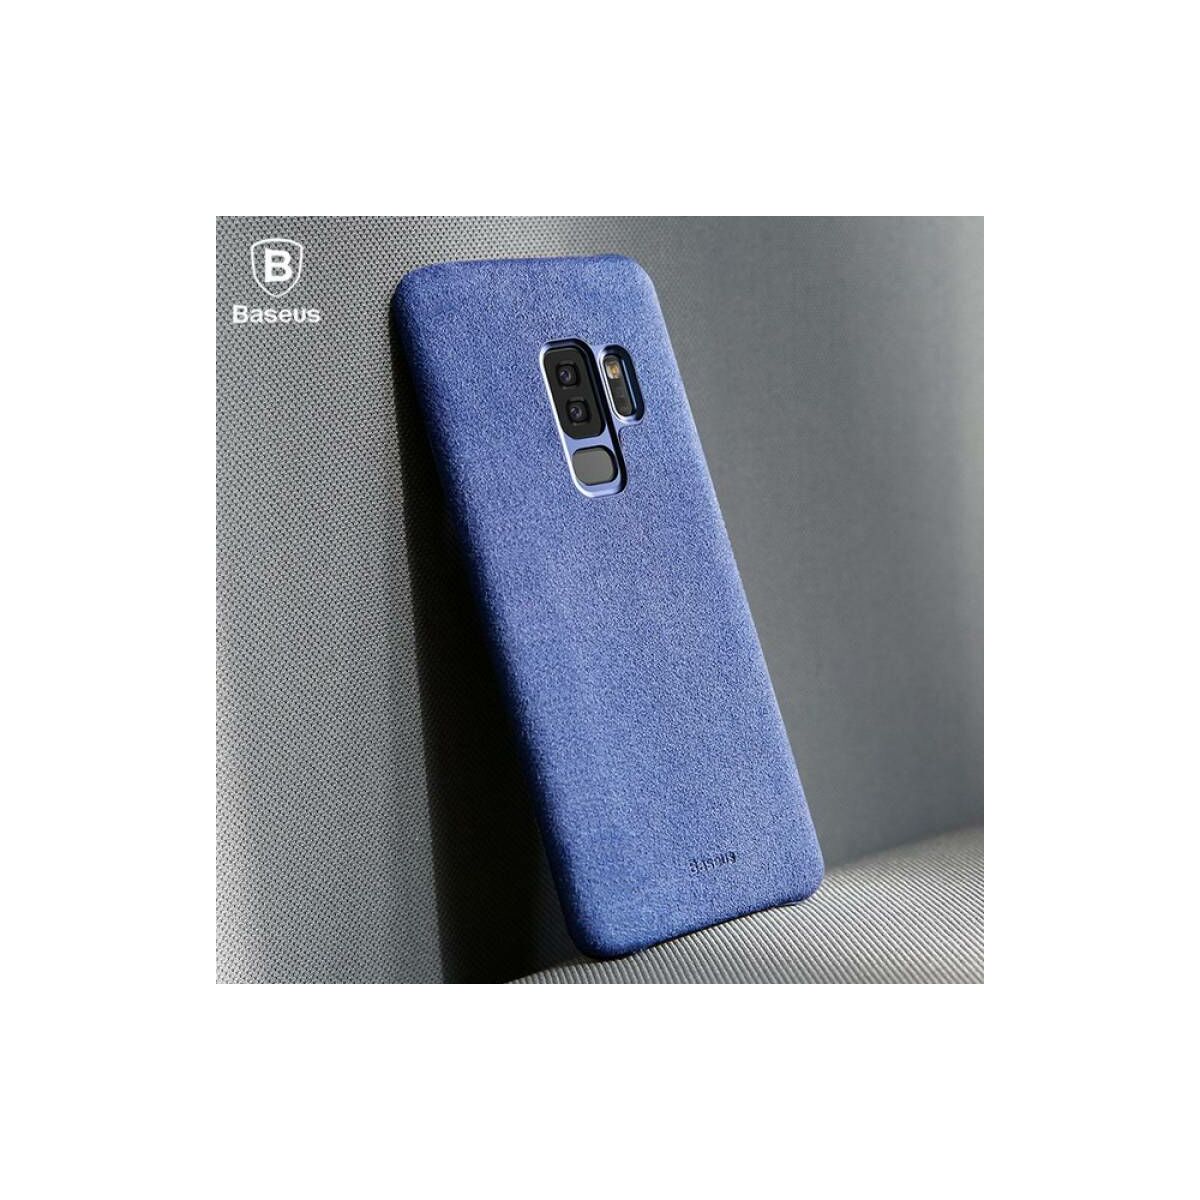 Kép 3/6 - Baseus Samsung S9 tok, Original, kék (WISAS9-YP03)